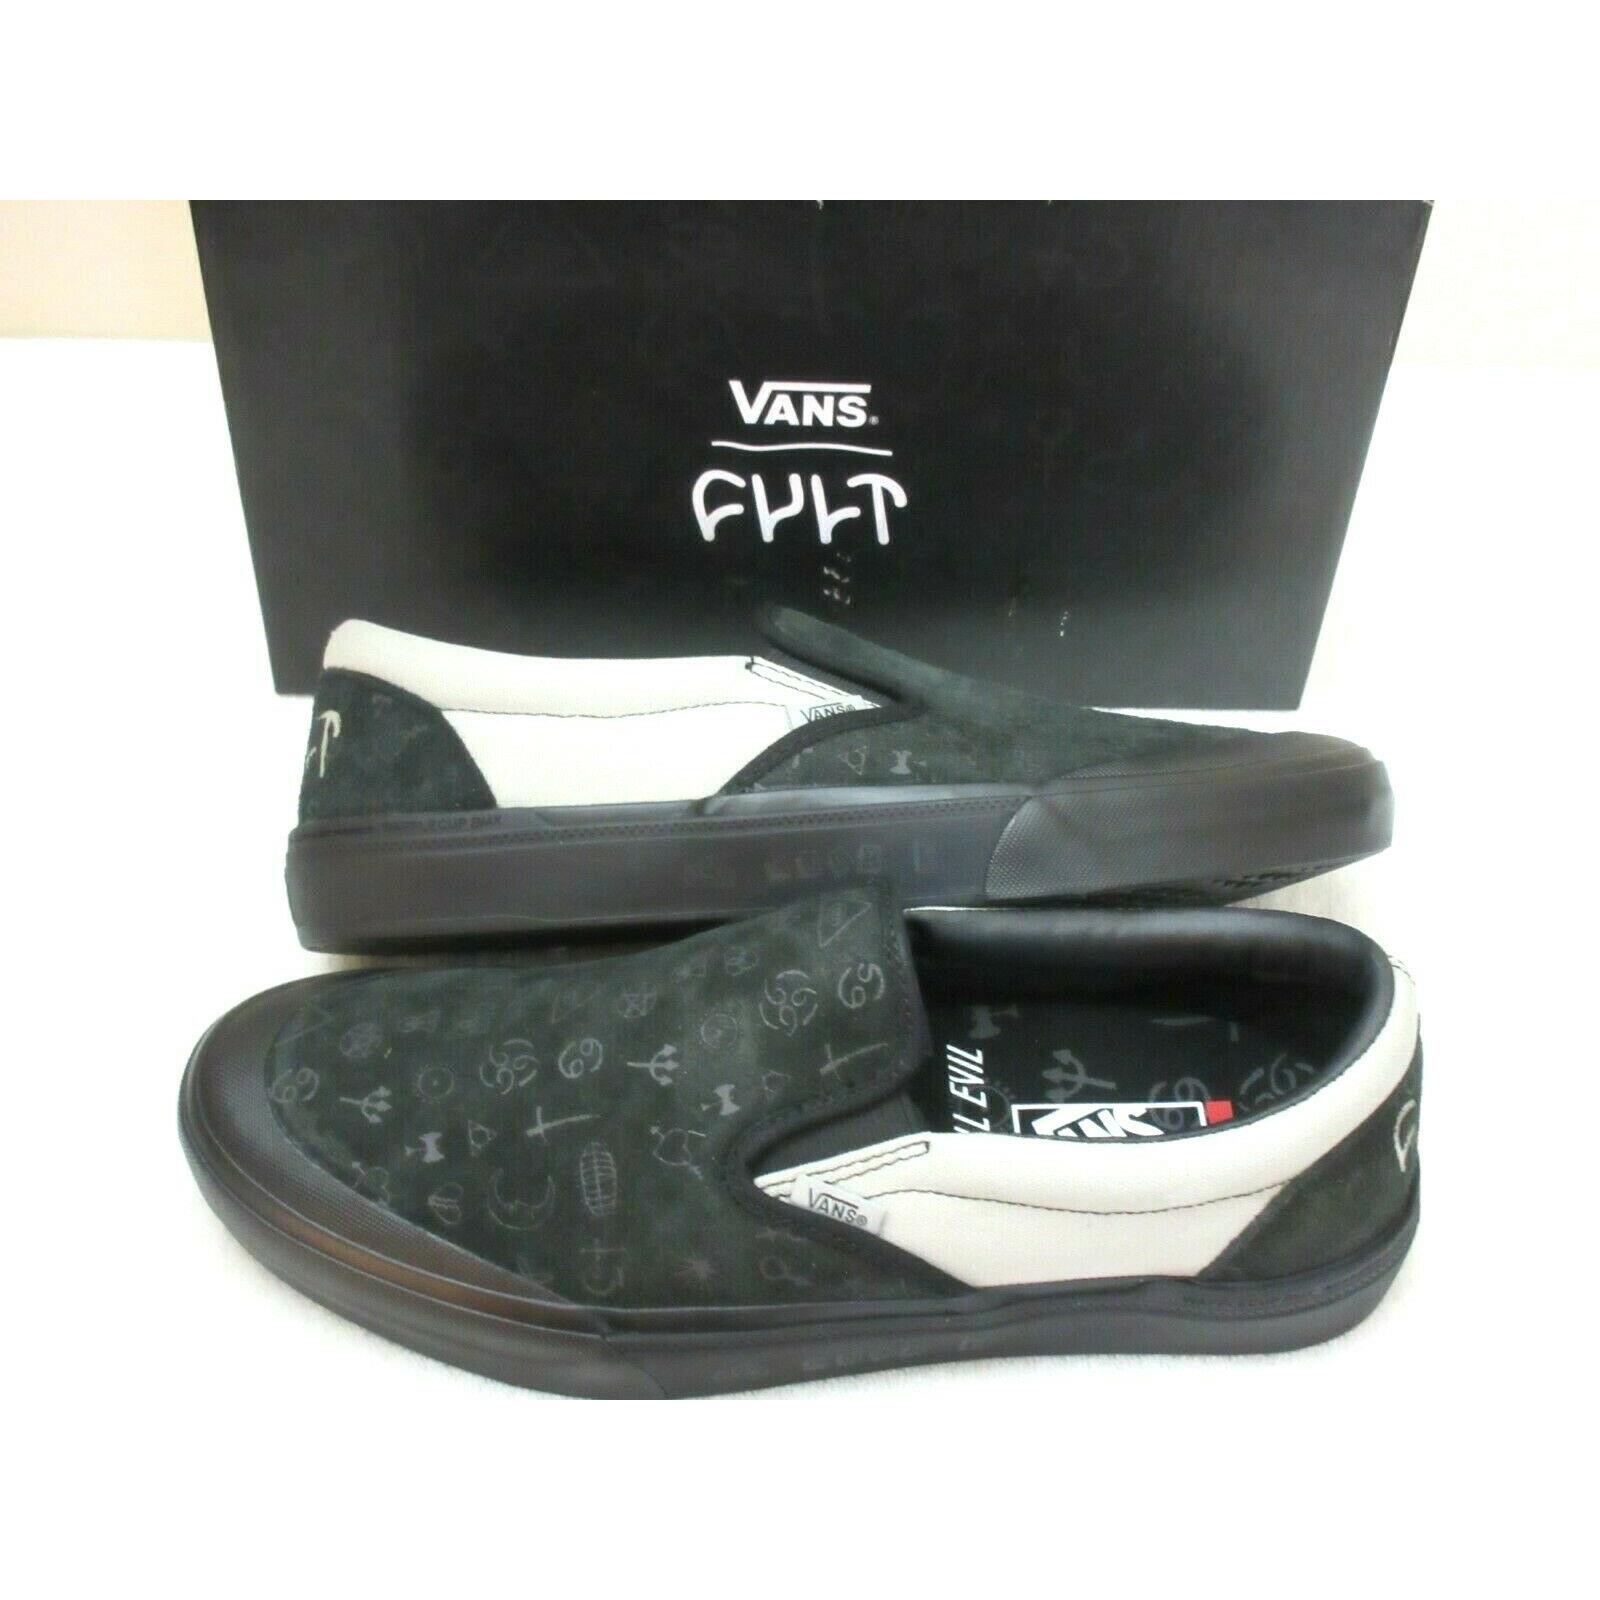 Vans x Cult Men`s Bmx Slip On Black Grey Suede Canvas Shoes Size 9.5